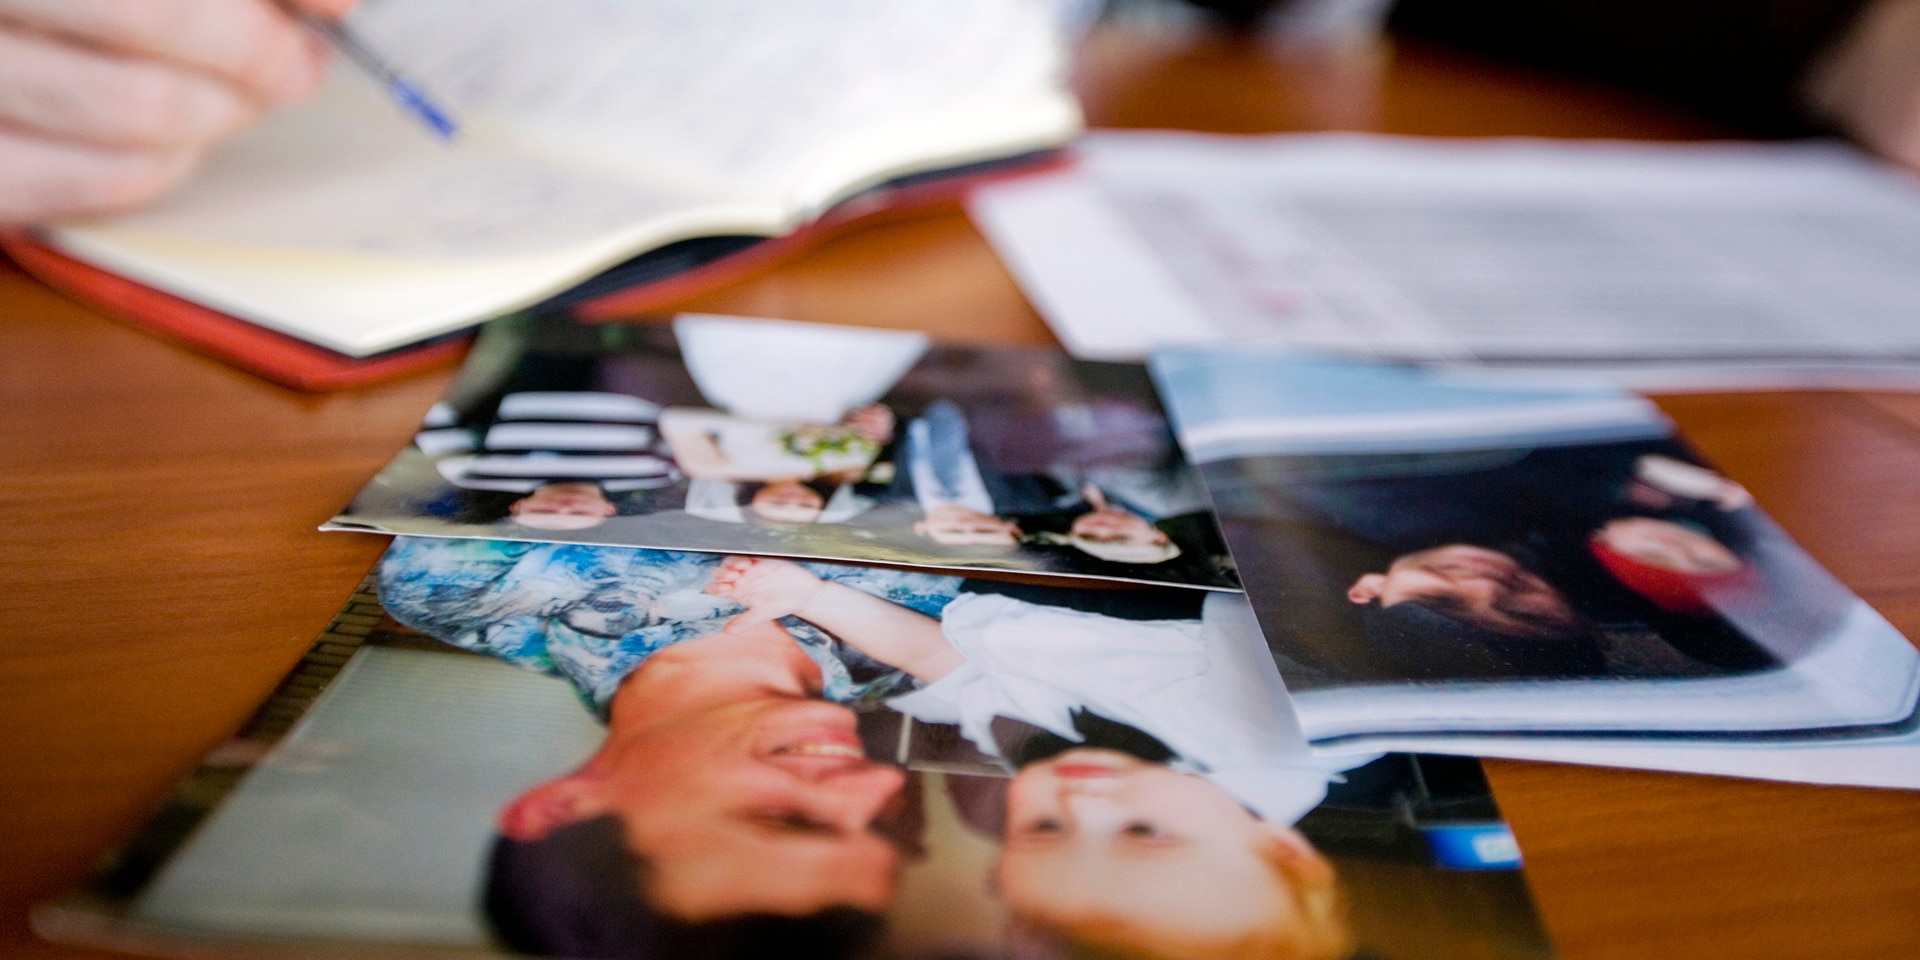 Des photos de famille sont posées sur une table avec en arrière-fond une personne qui rempli un formulaire du CICR.